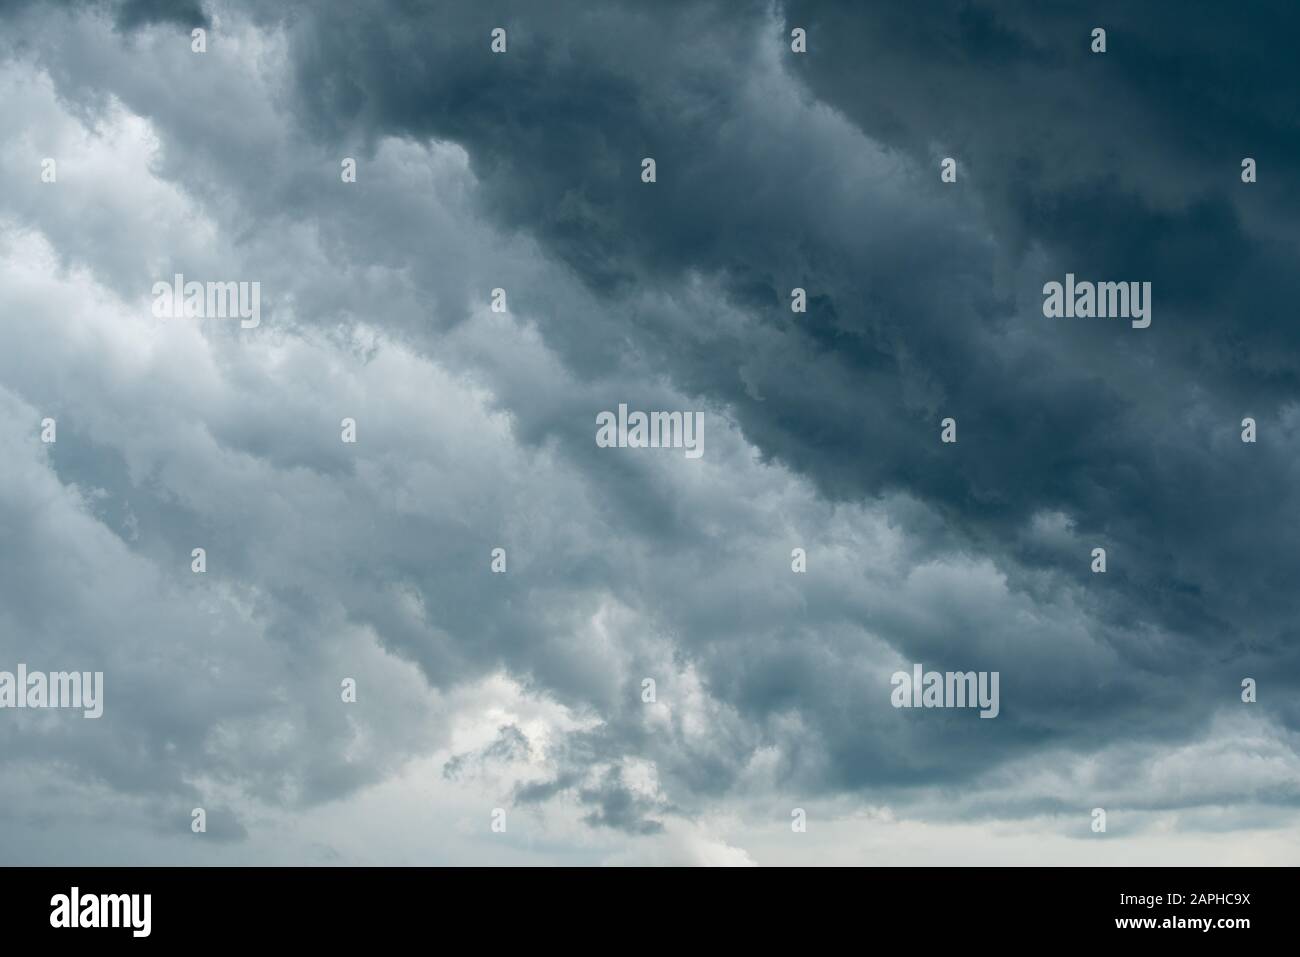 Gewitterwolke Hintergrund während regnen. Dunkle Wolken. Riesige schwarze Wolken am dunklen Himmel vor dem Gewitter. Stockfoto